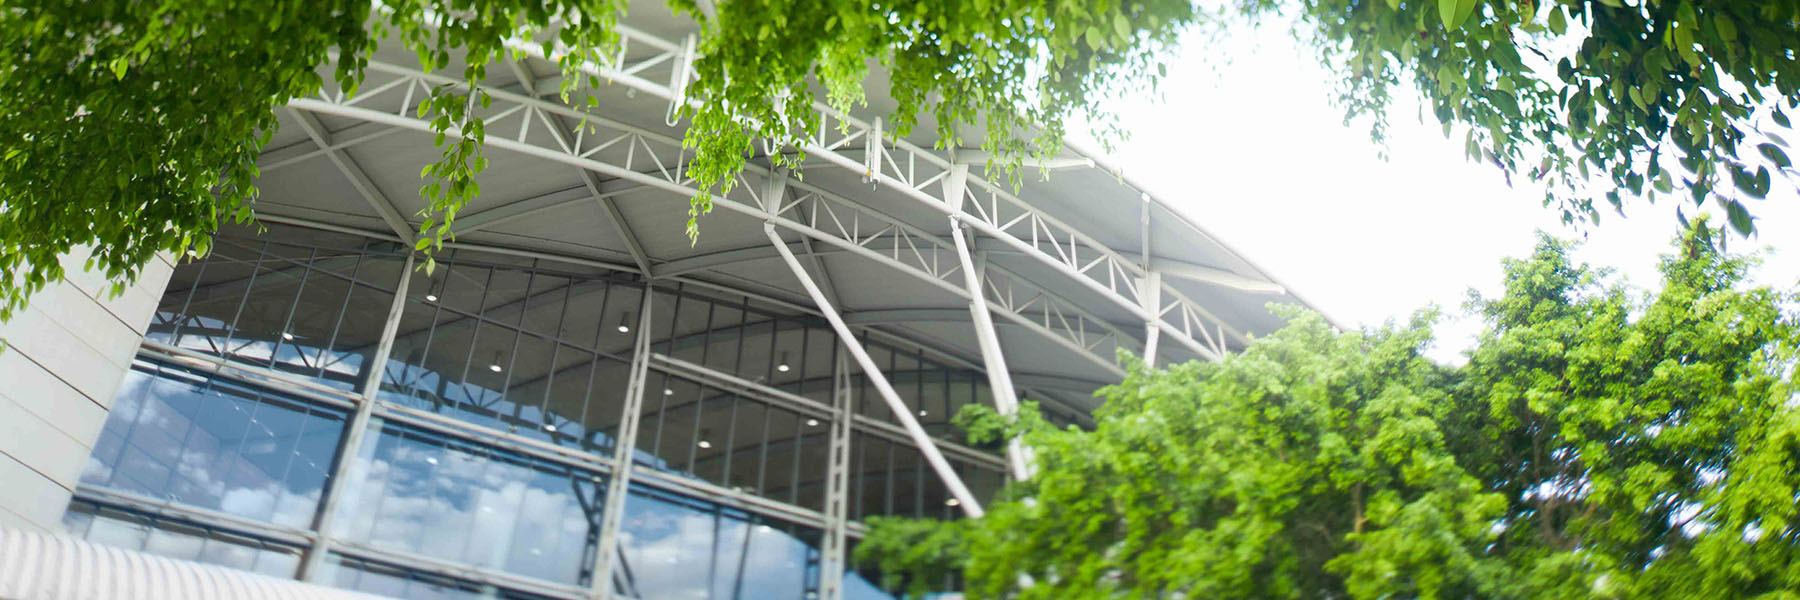 Brisbane Convention & Exhibition Centre Expansion 